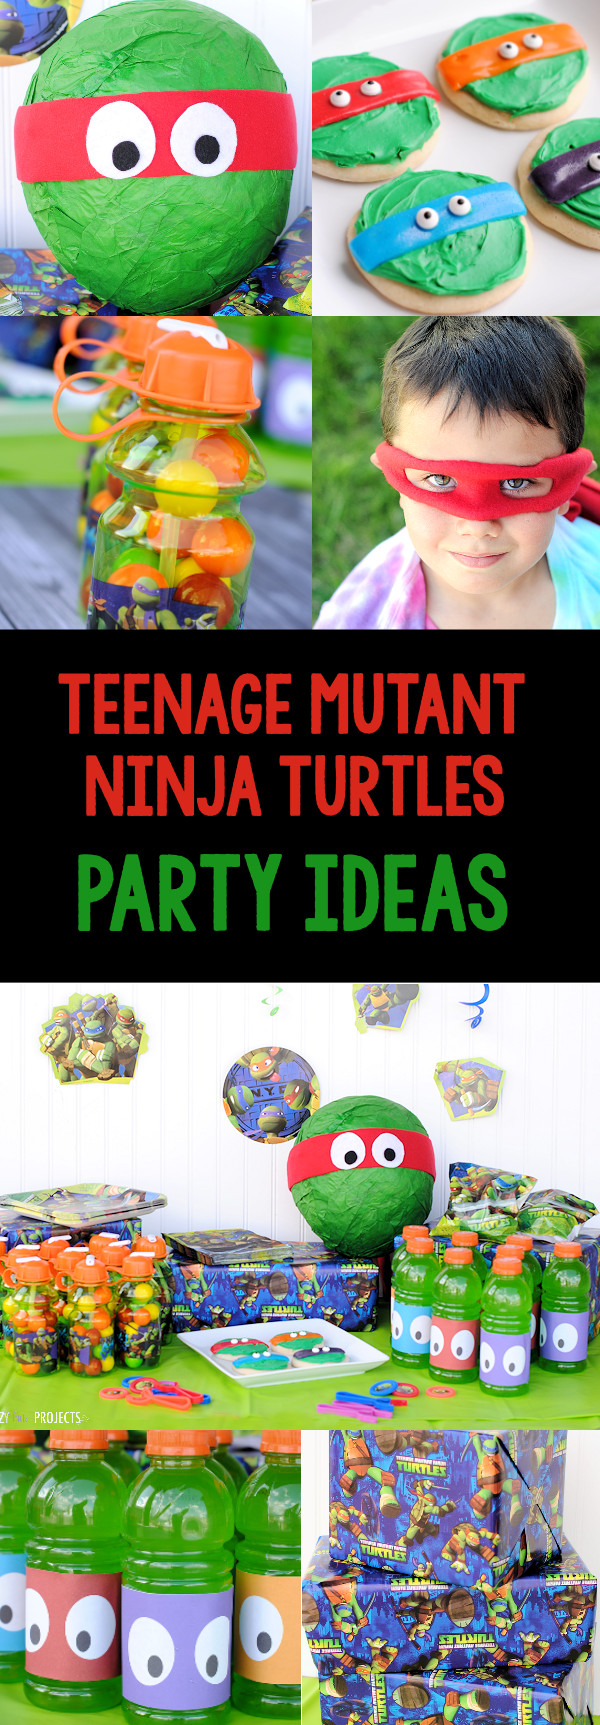 Teenage Mutant Ninja Turtle Birthday Party Ideas
 Teenage Mutant Ninja Turtle Party Ideas